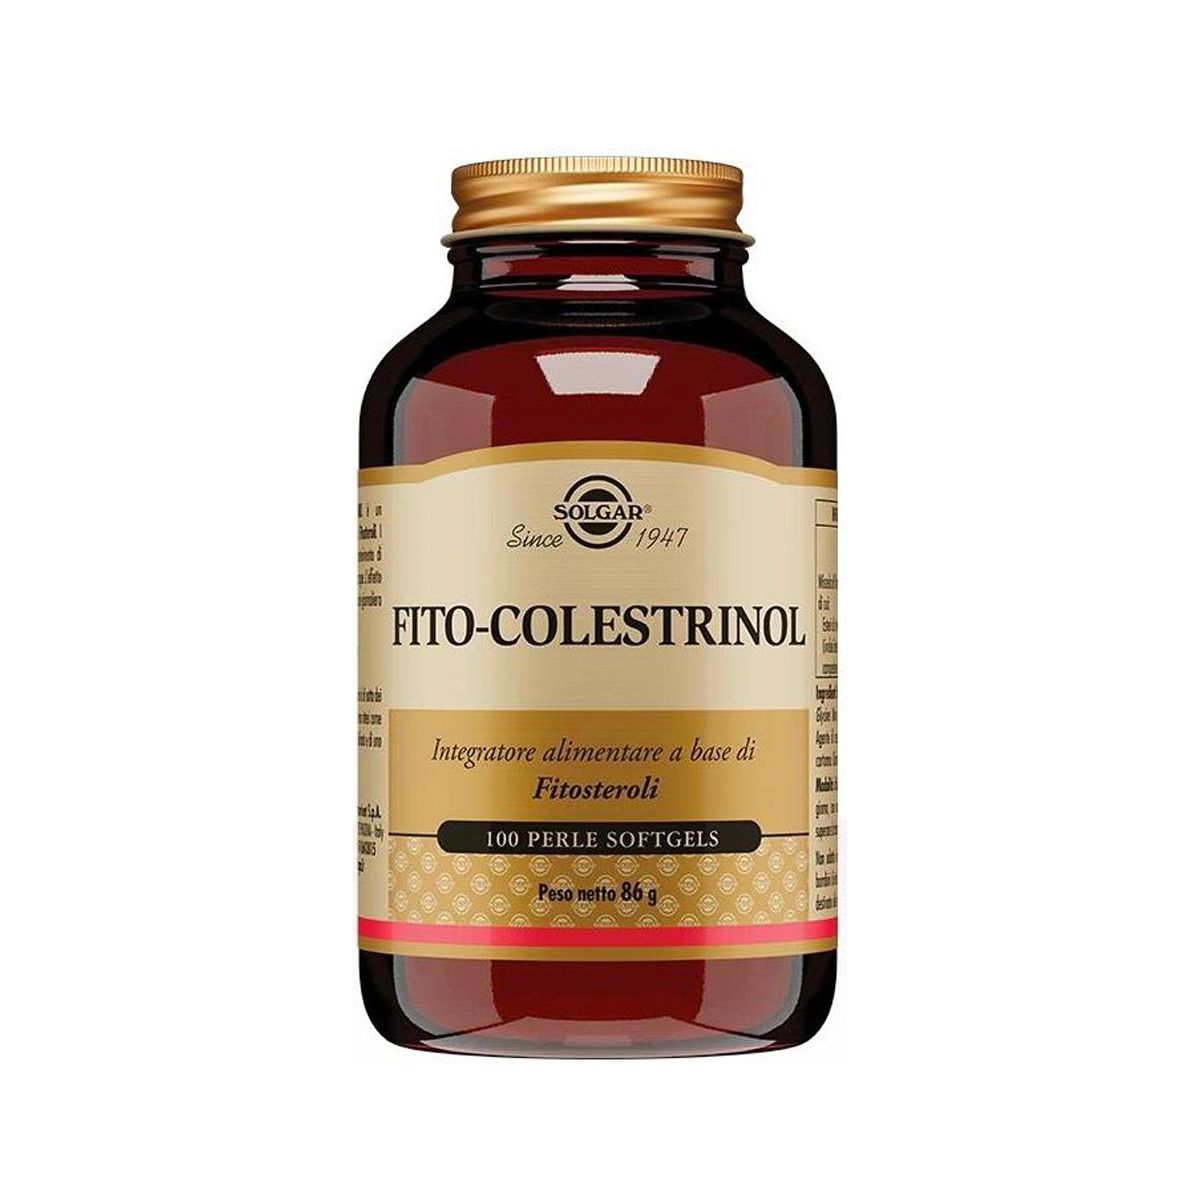 Solgar Fito-colestrinol Integratore Controllo Colesterolo 100 Perle